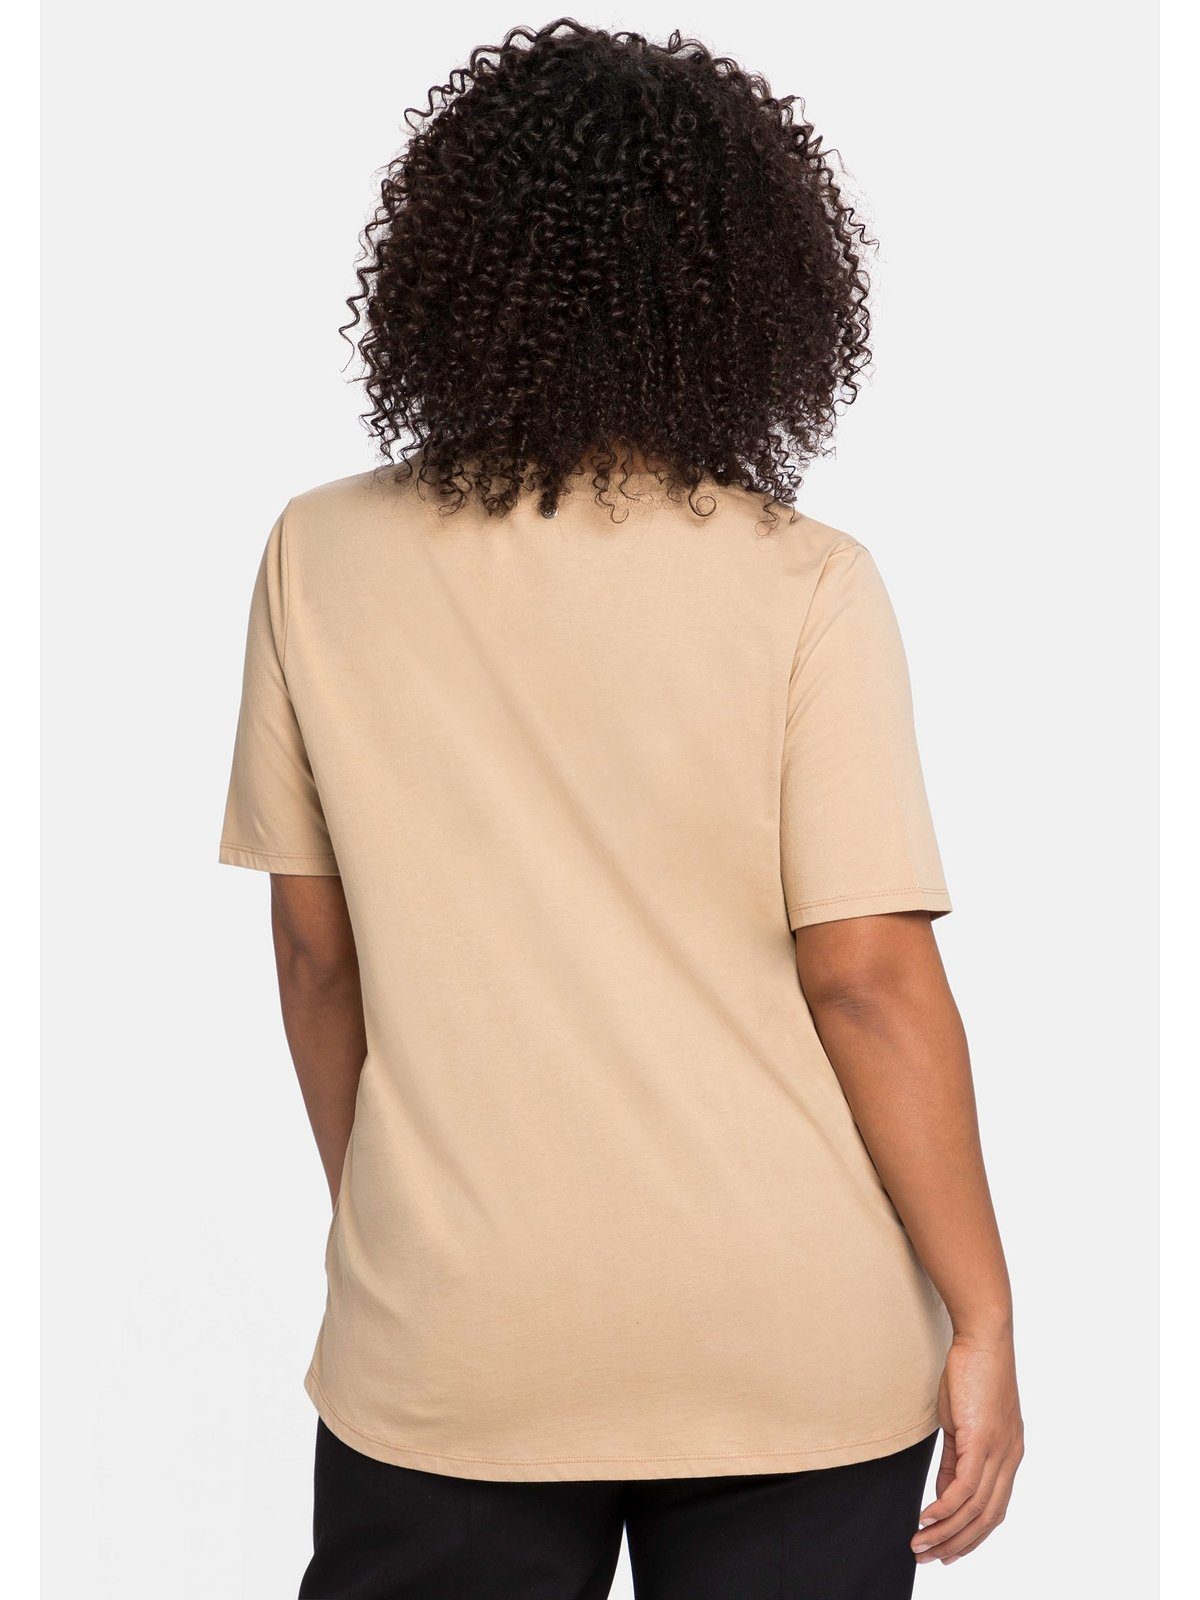 Sheego T-Shirt mit V-Ausschnitt, Größen camelfarben am Große in A-Linie Falte